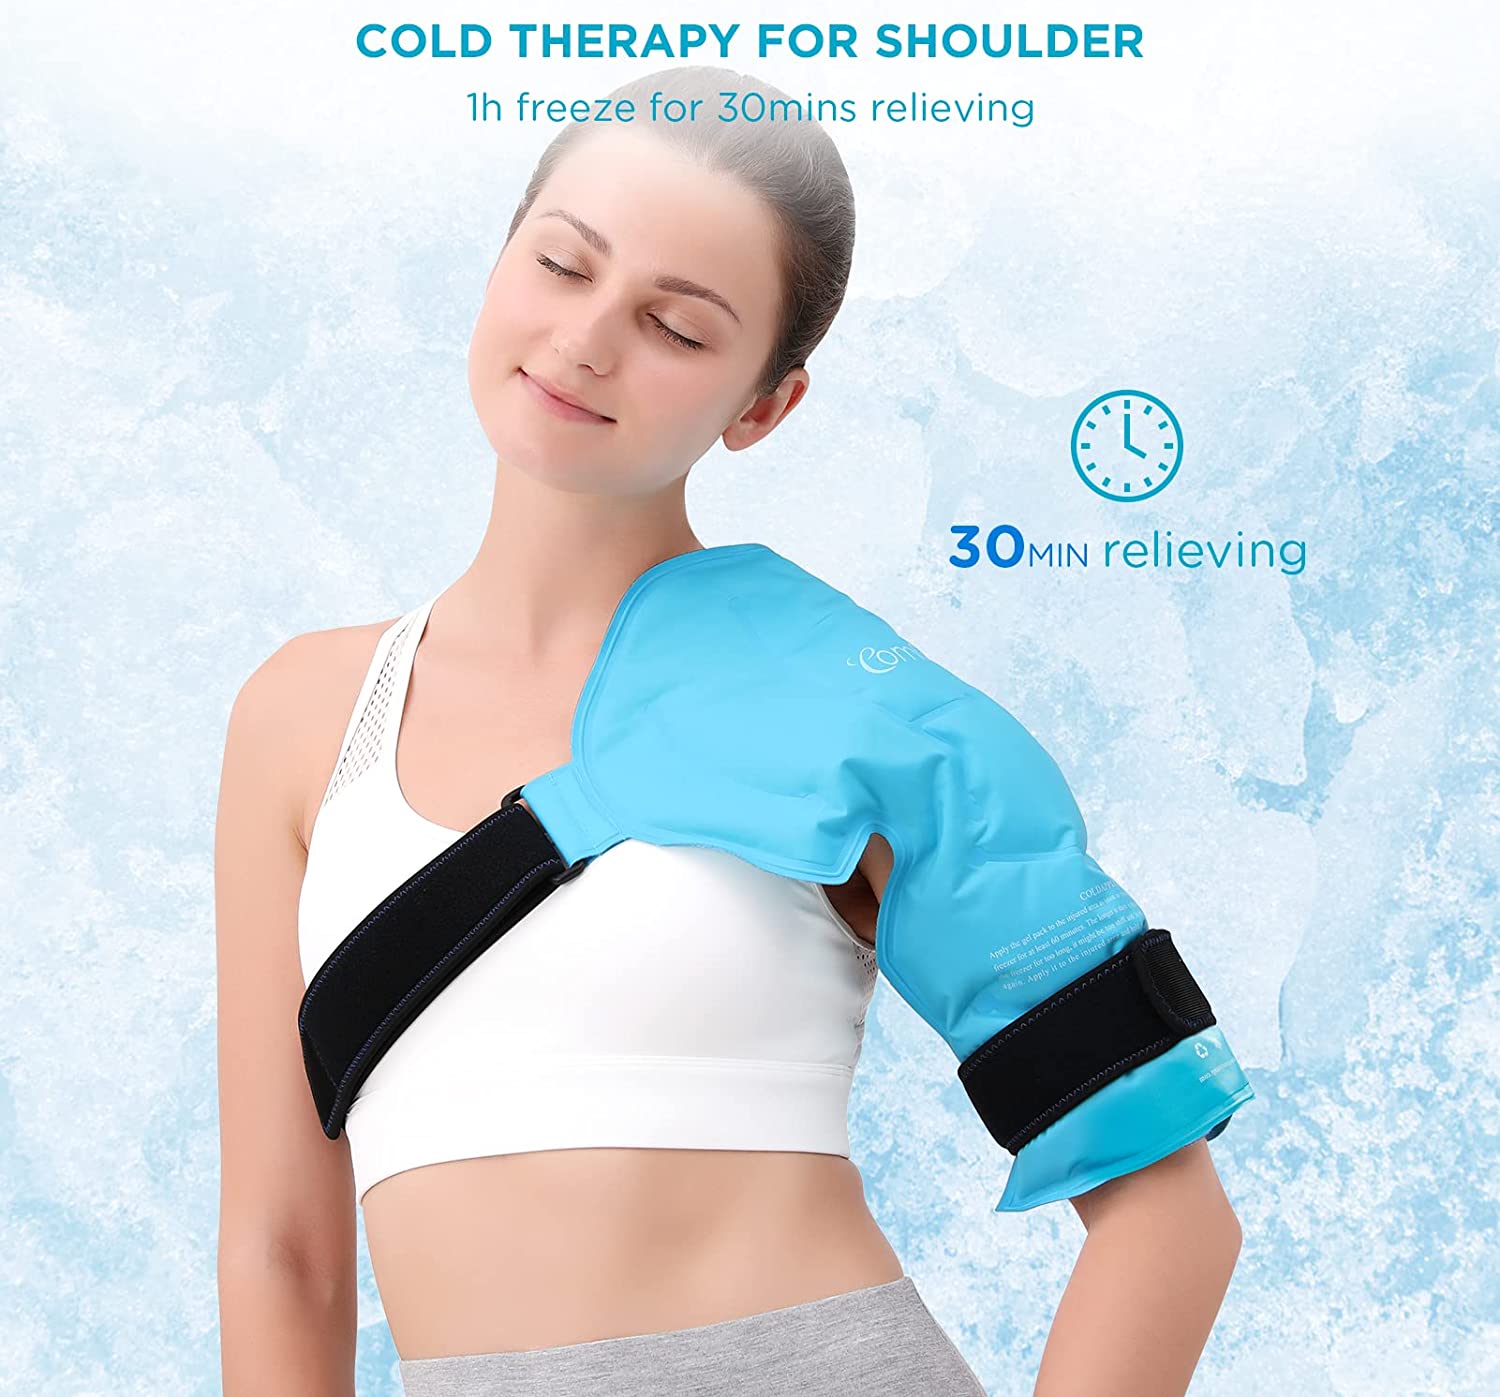 Ice vs Heat for Treating Frozen Shoulder